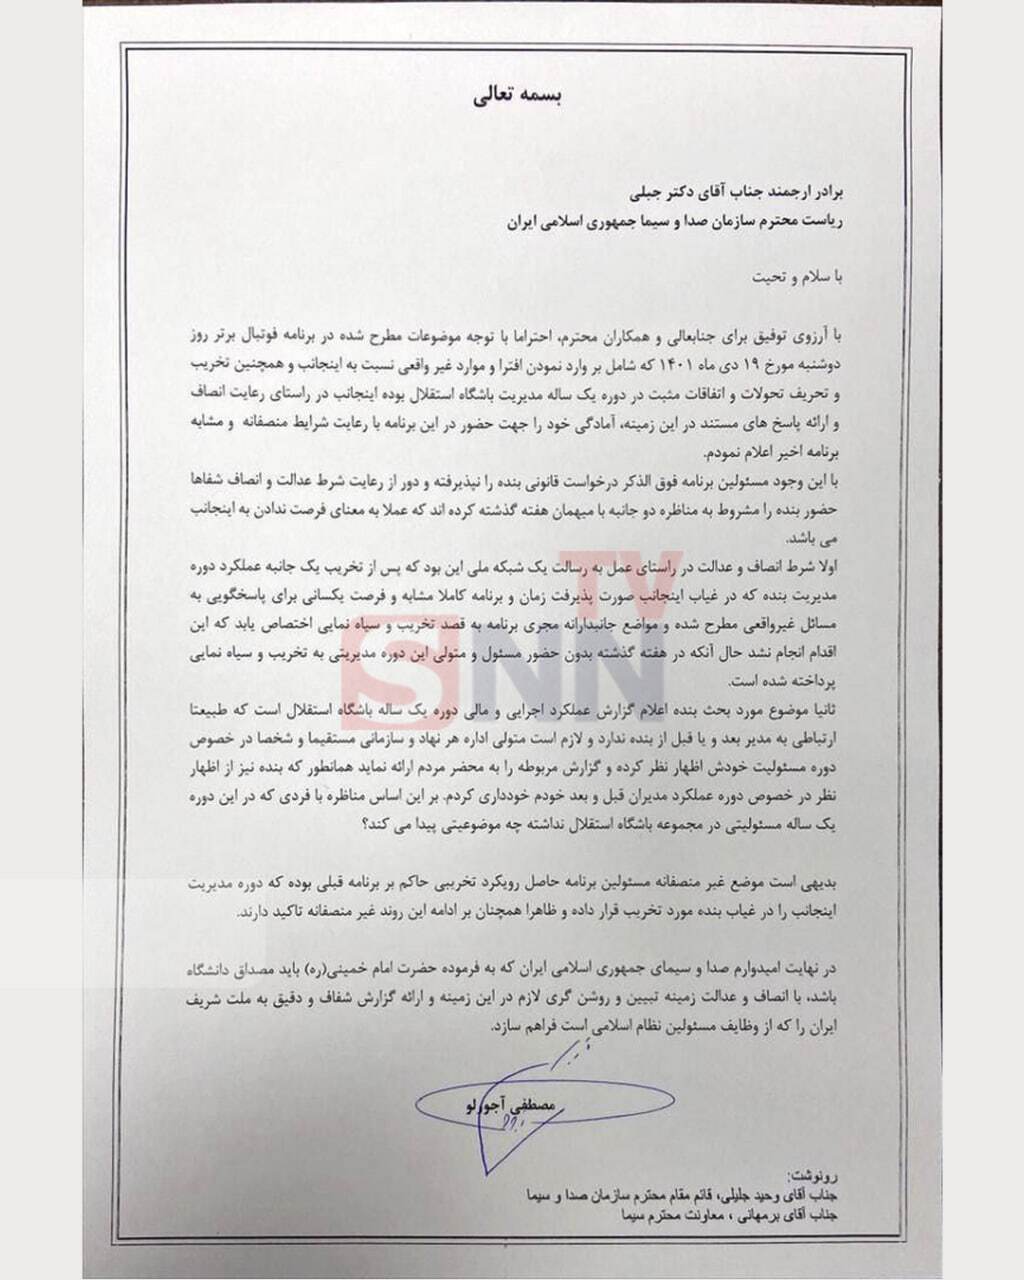 نامه گلایه آمیز آجرلو به رئیس صداوسیما/ برنامه فوتبال برتر اجازه حضور در شرایط یکسان را نداد+ عکس